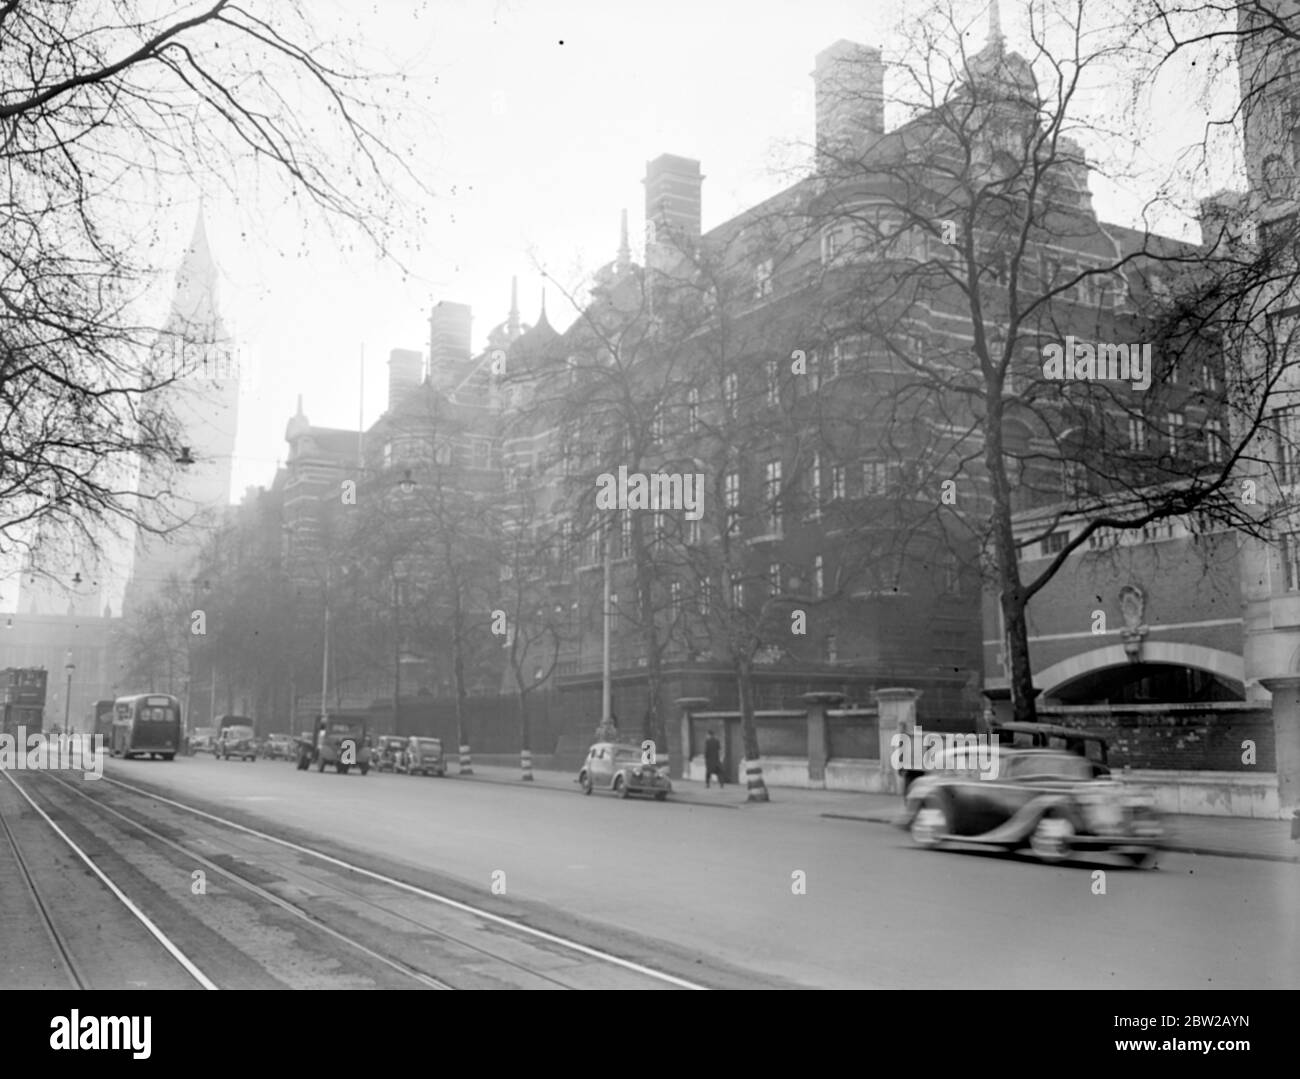 Die Norman Shaw Gebäude (früher bekannt als New Scotland Yard), Victoria Embankment. Parlament und Big Ben Turm im Hintergrund. [Keine Originalunterschrift, Datum] 1930er, 1940er Jahre Stockfoto